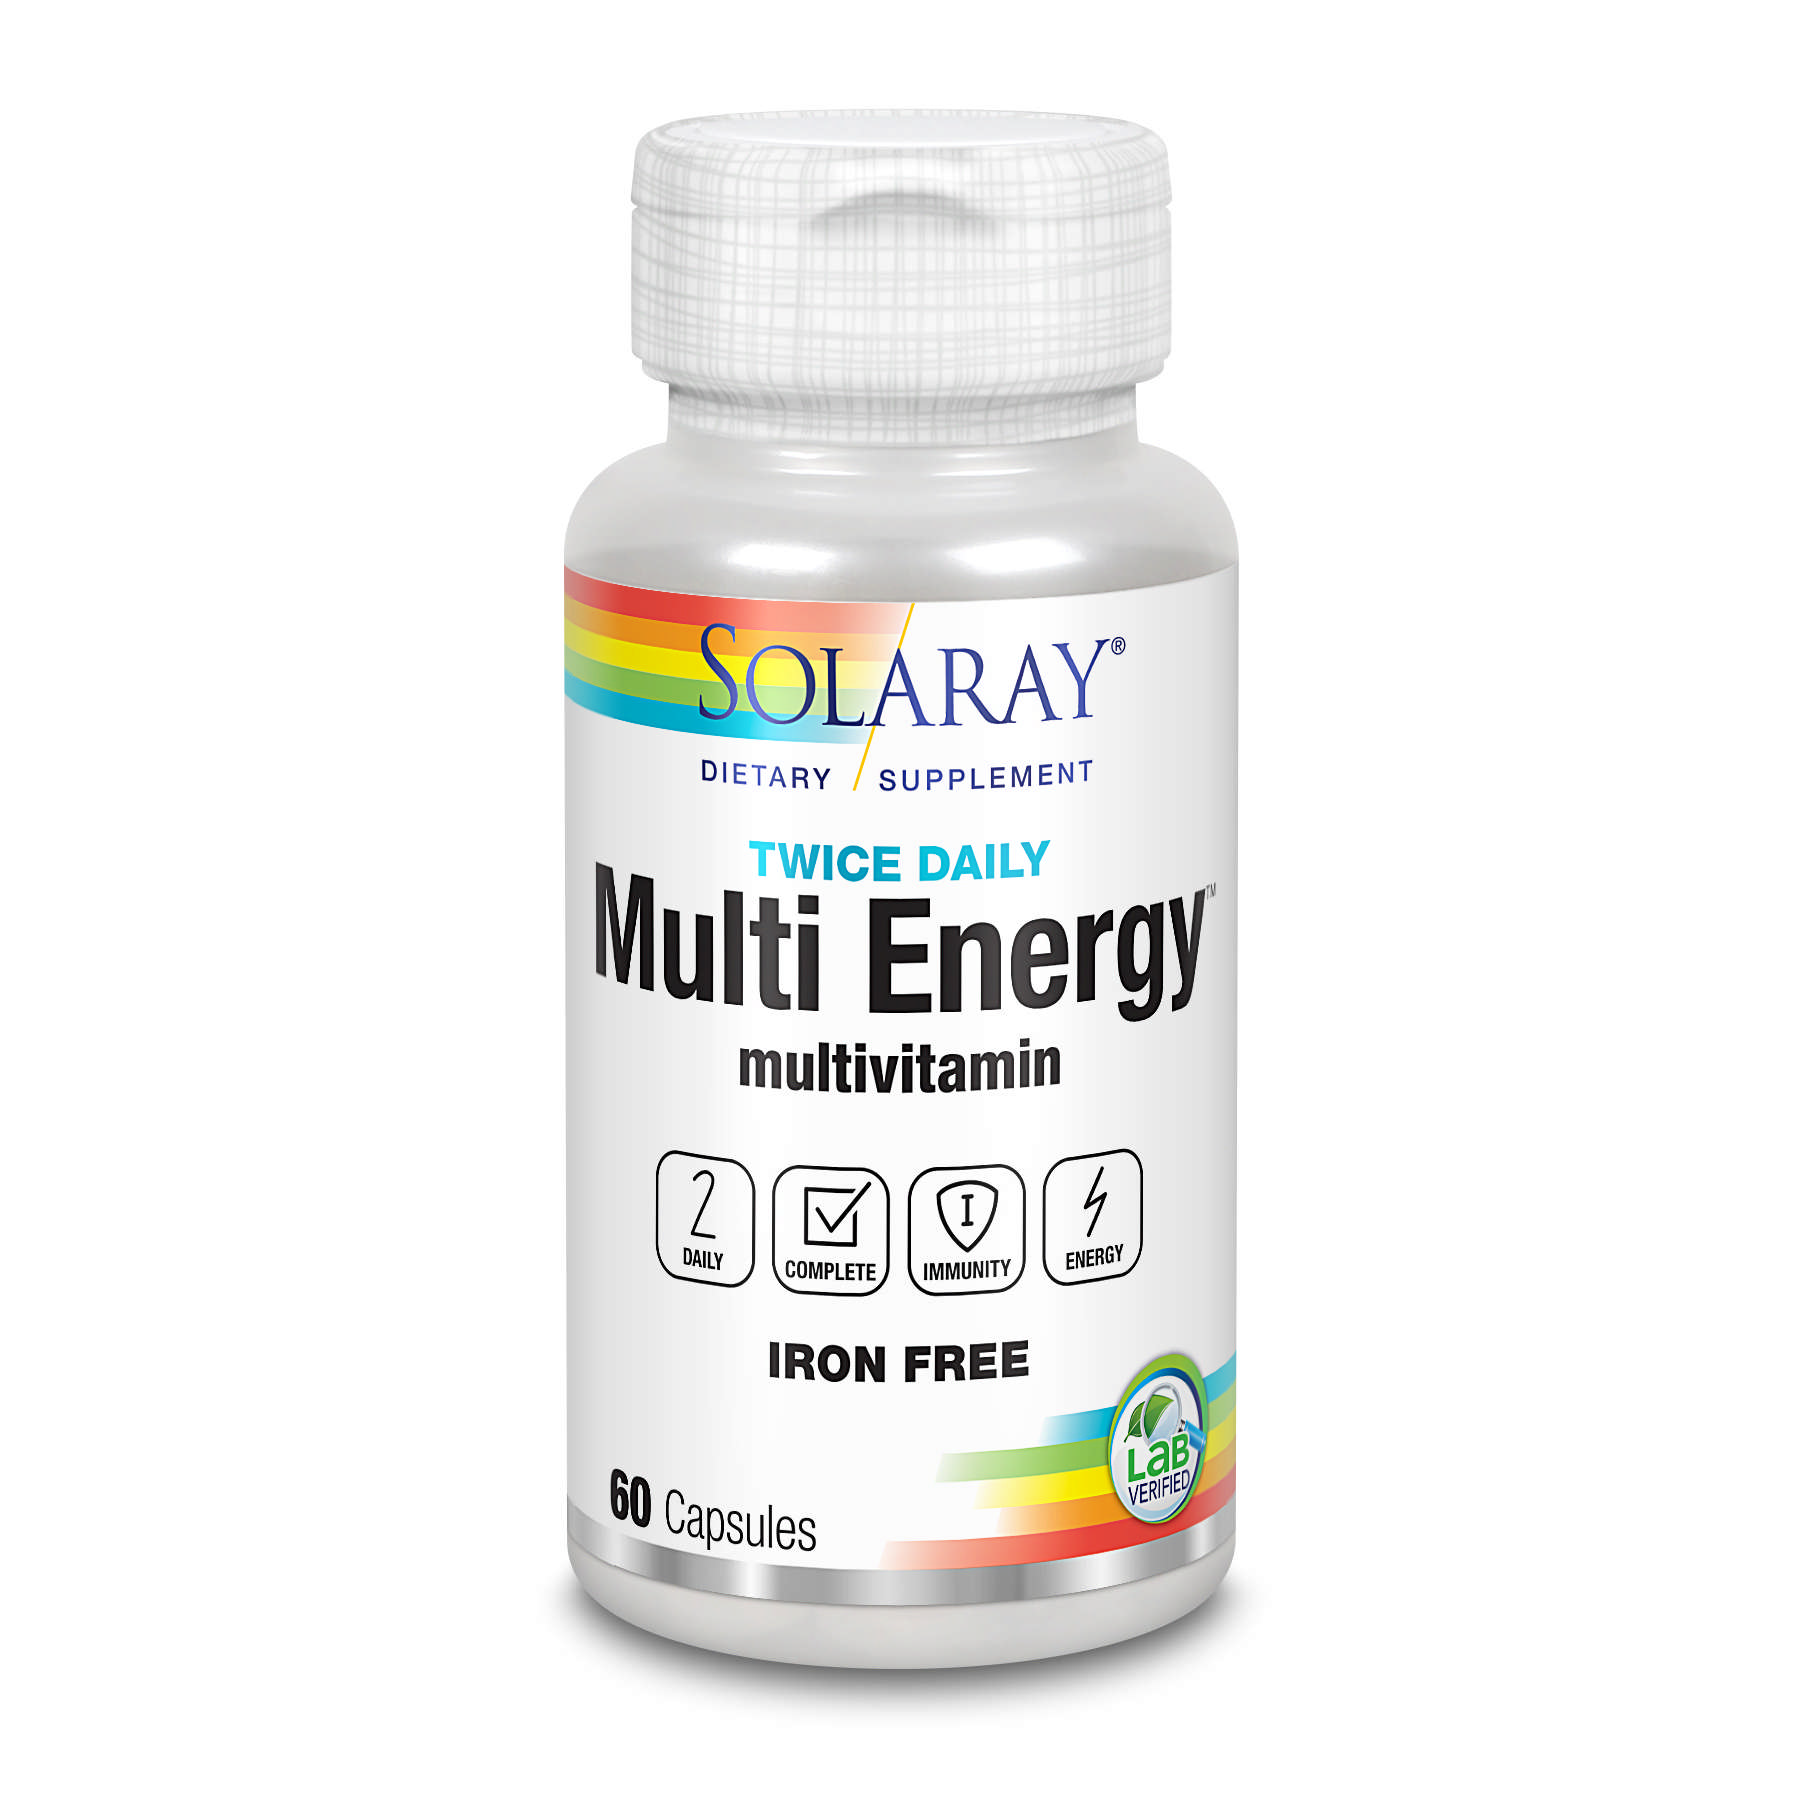 Solaray - Multi Energy 2 No Fe